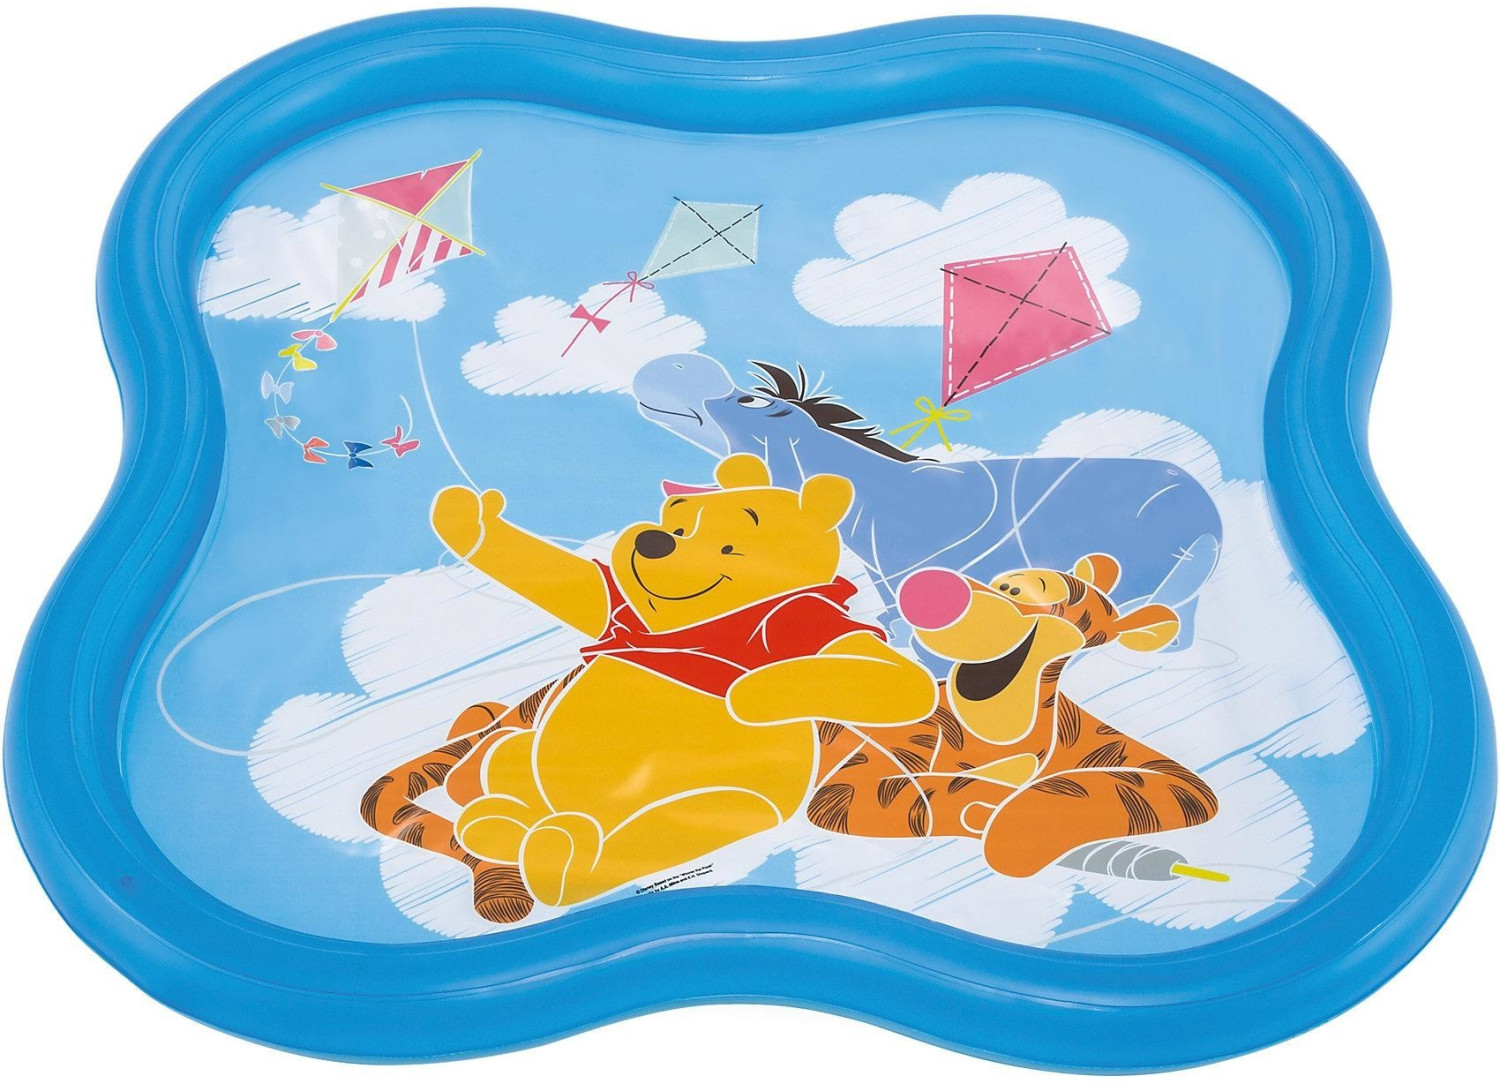 Intex Winnie the Pooh Baby Spritz-Planschbecken